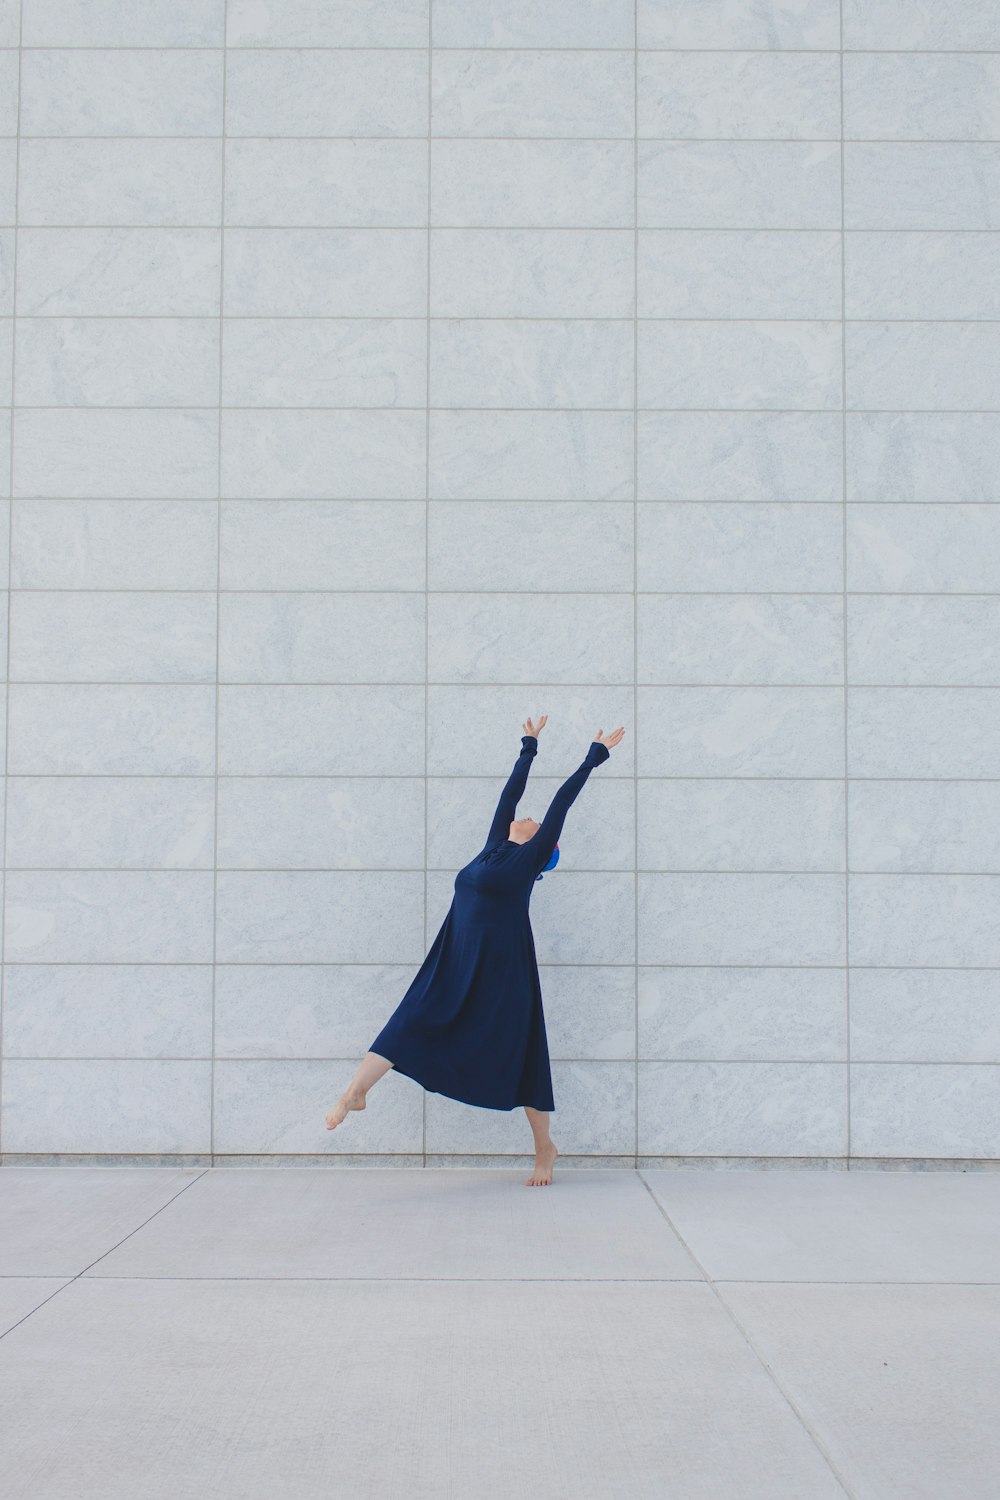 Frau im blauen Kleid auf weißen Bodenfliesen stehend